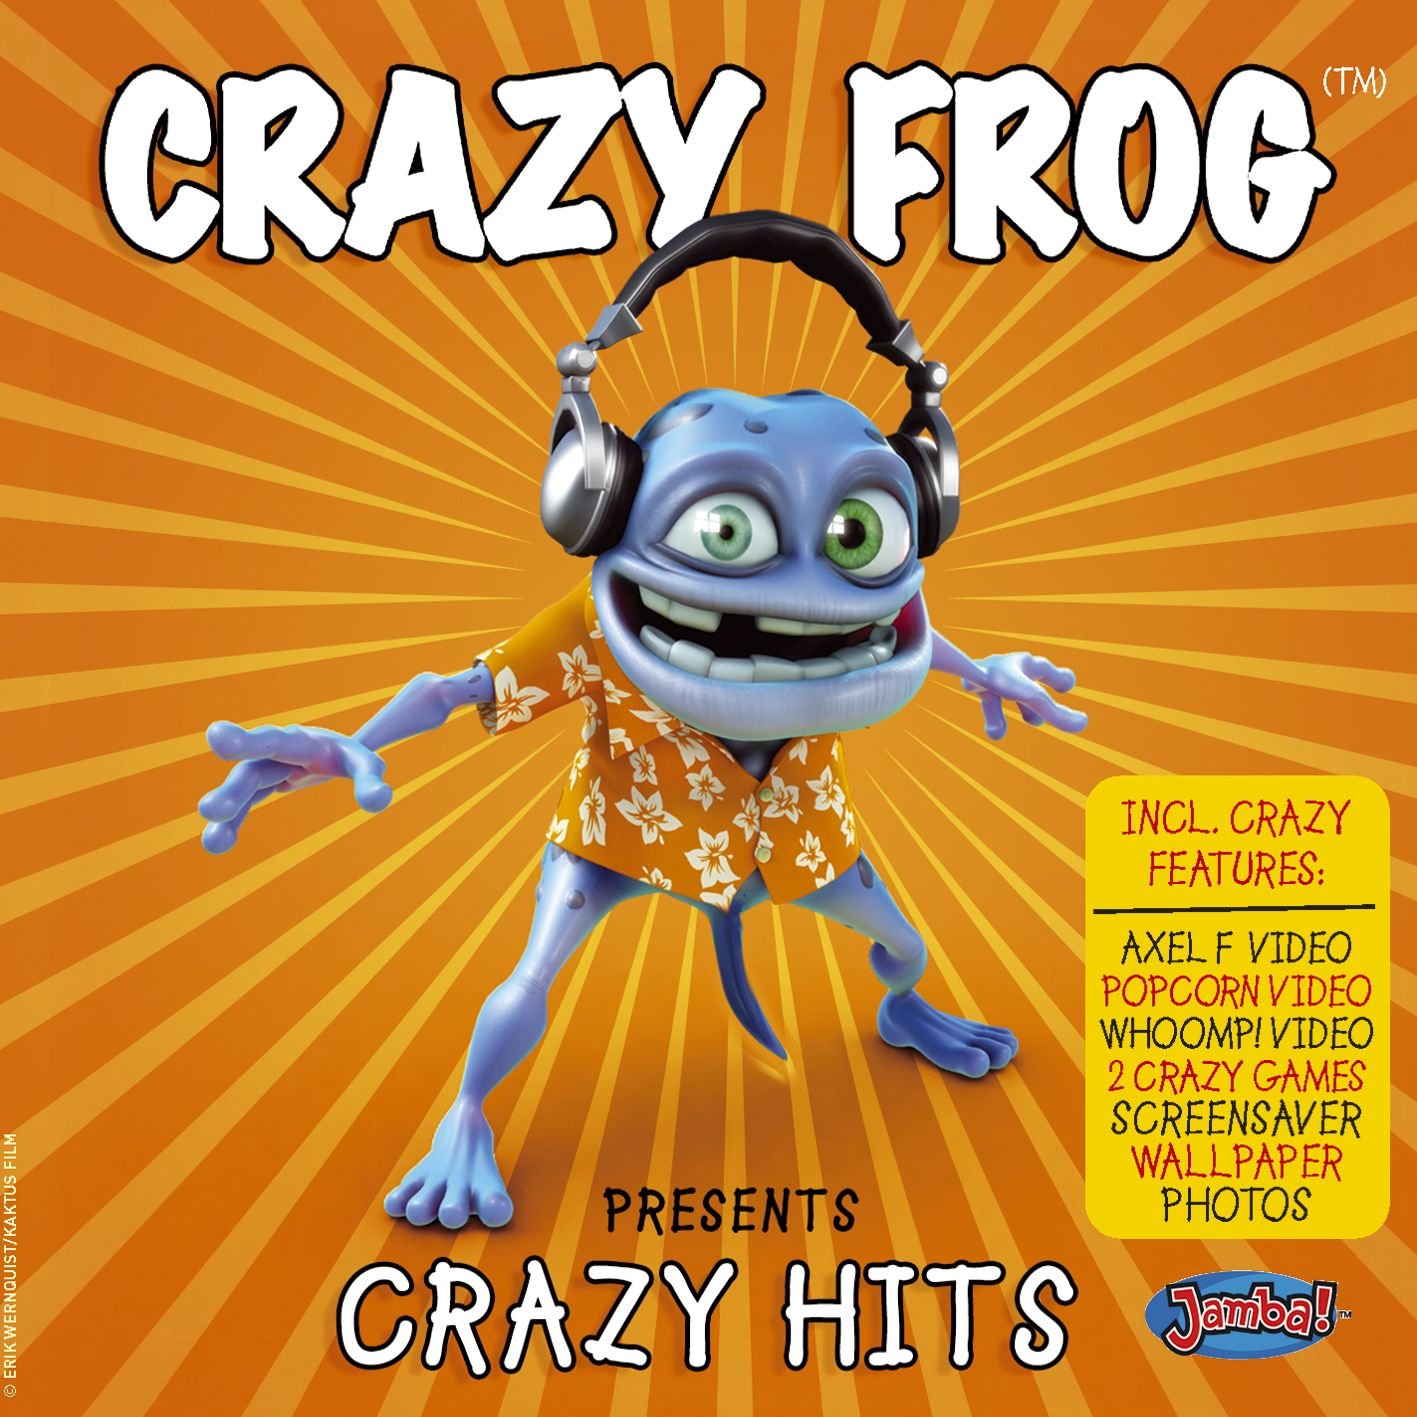 Crazy Frog. Crazy Frog Axel. Crazy Frog Axel f альбом. Crazy Frog Popcorn. Crazy frog cover